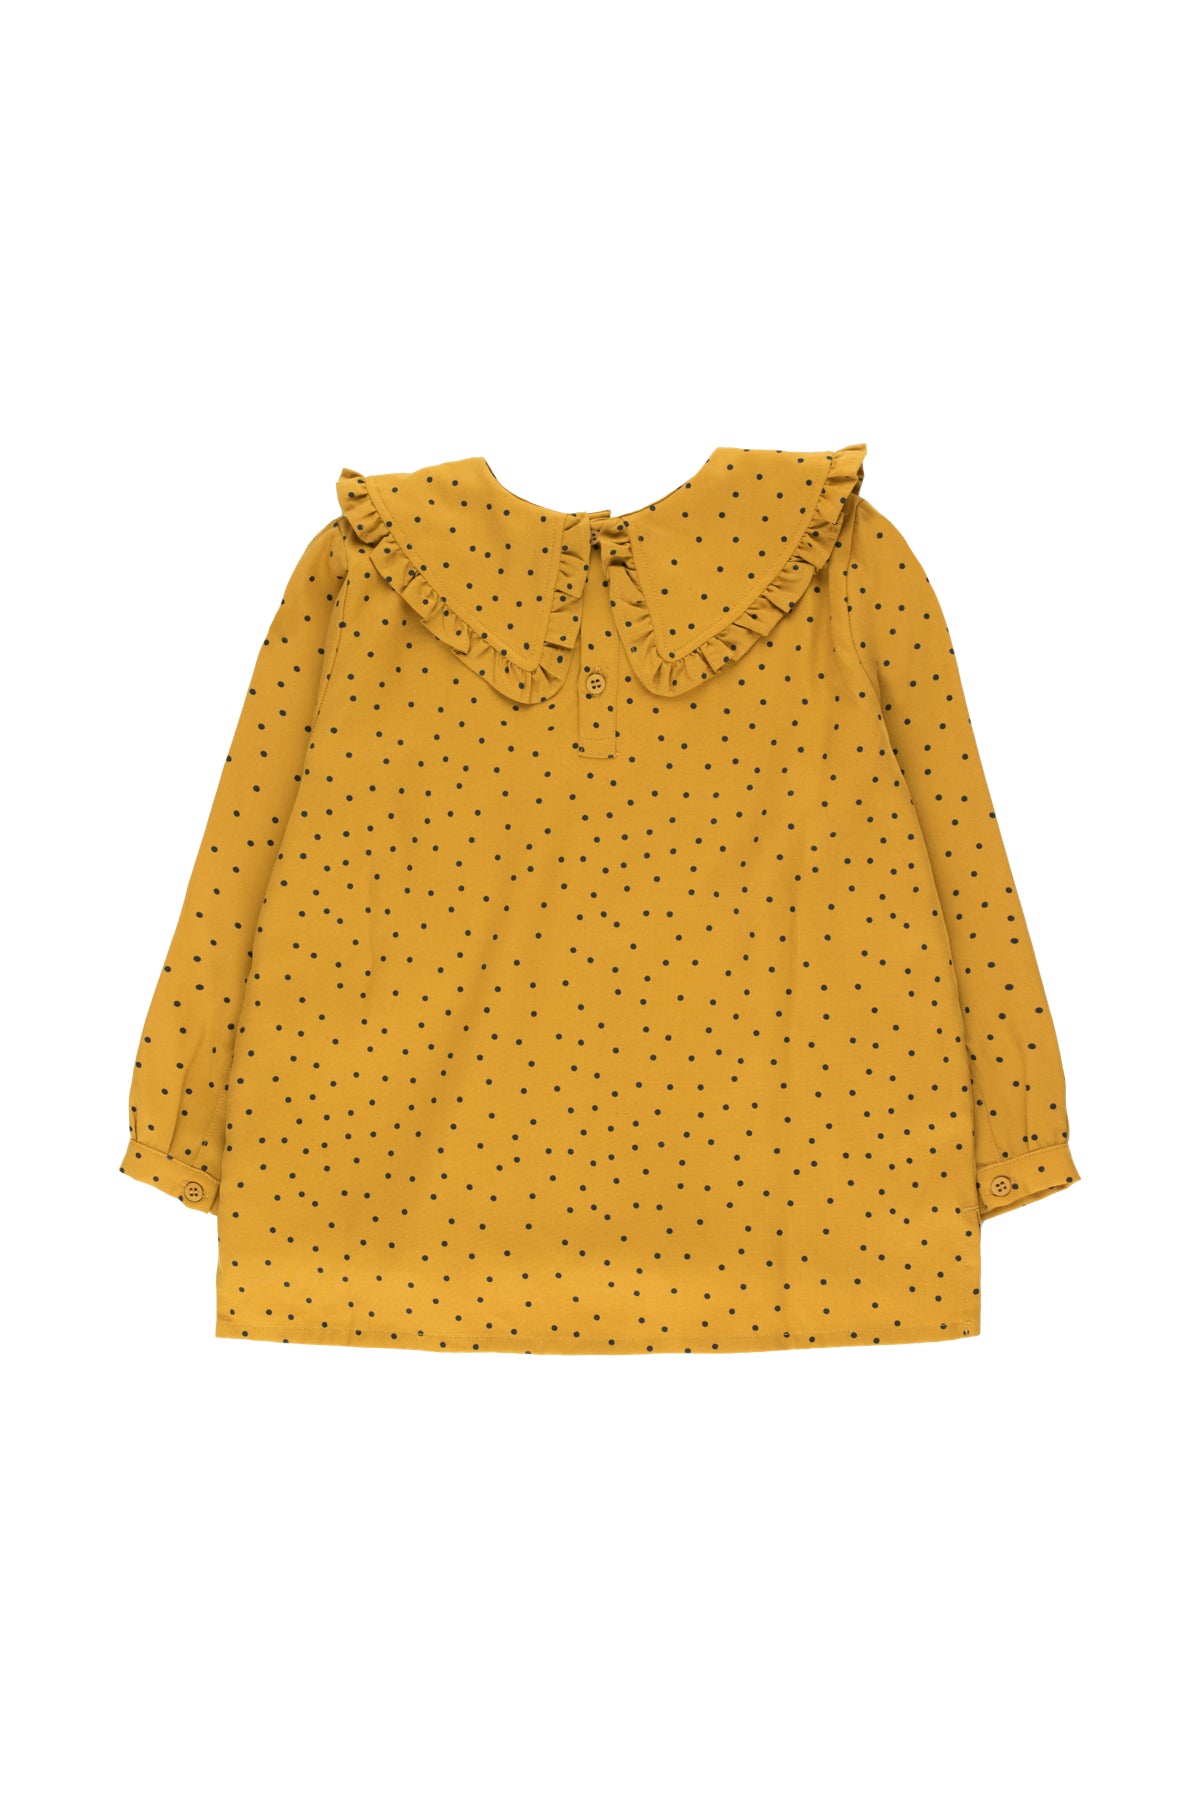 Girls Mustard Dots Shirt